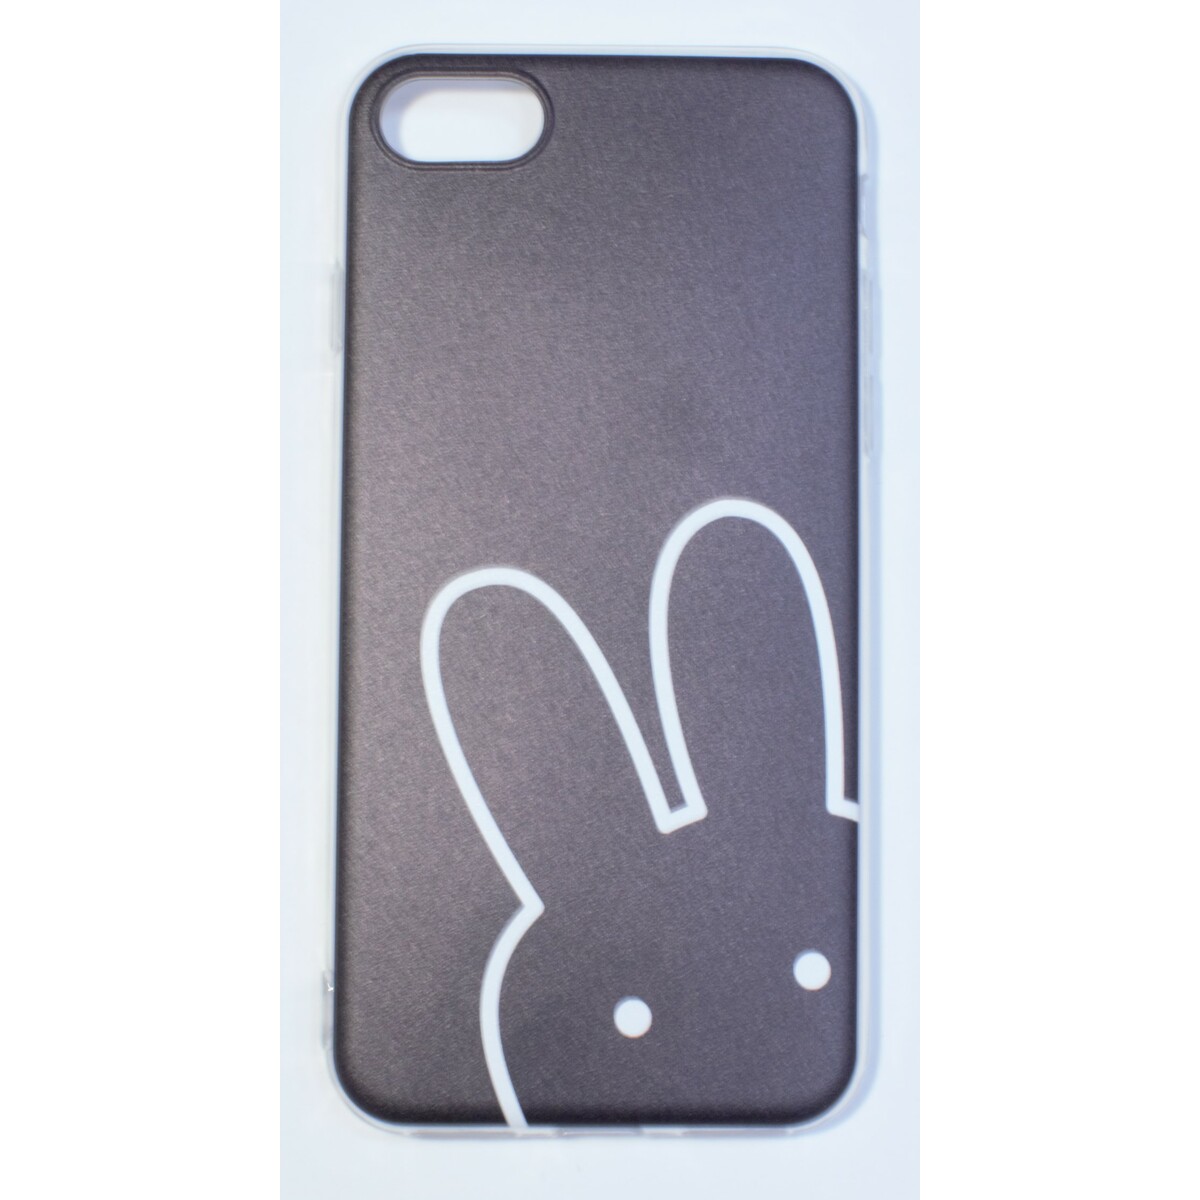 Чехол-накладка Fashion Case unipha multistyle для смартфона iPhone 7/8/SE 2020 (Цвет: Clear)